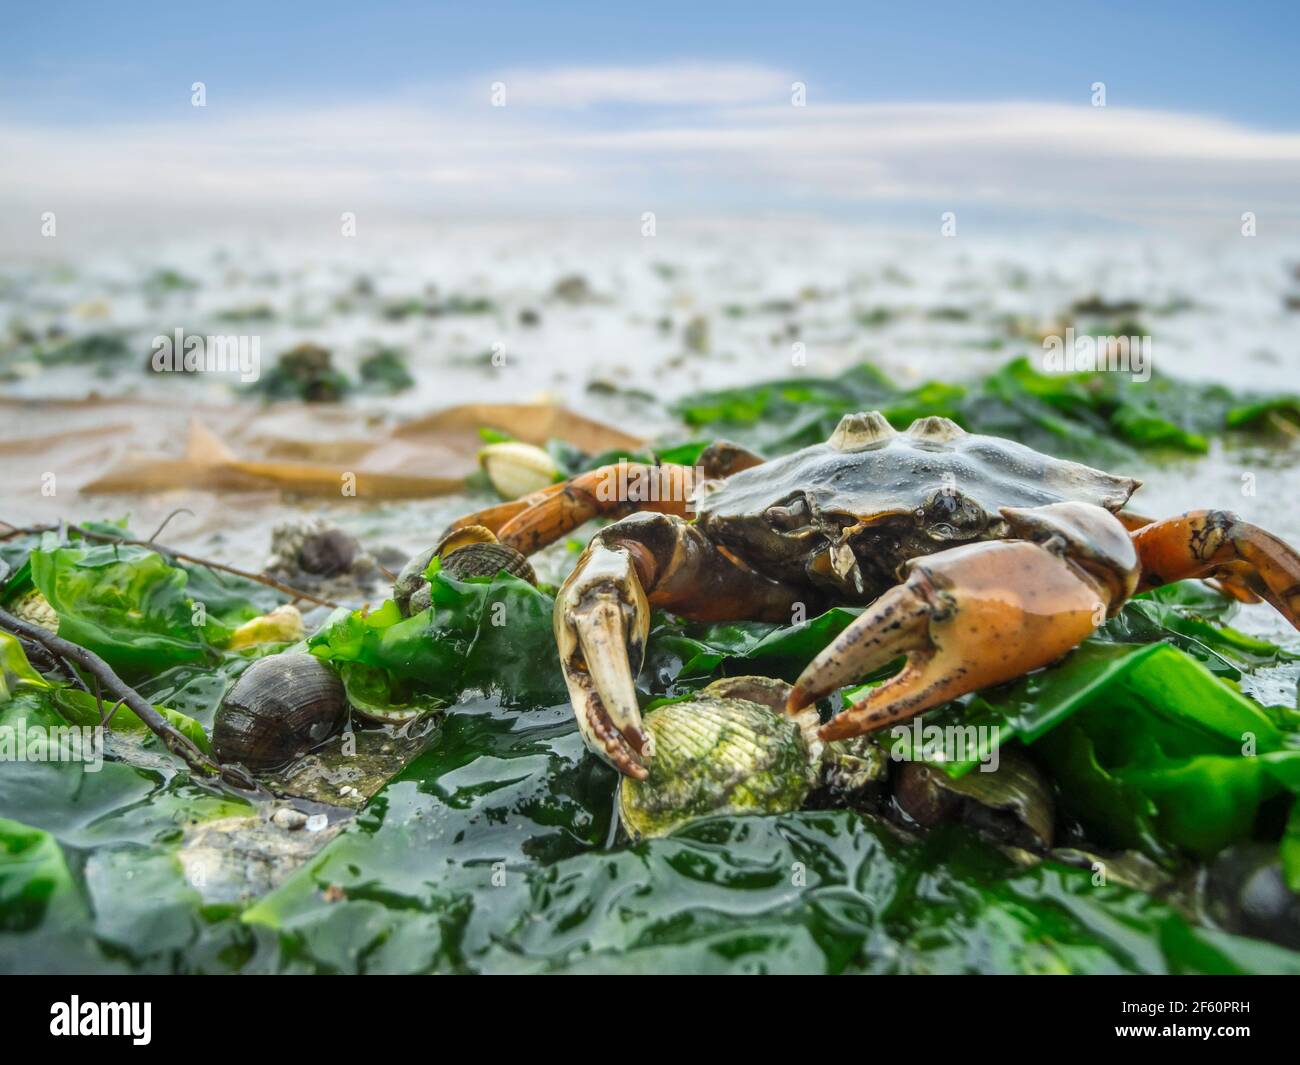 Nahaufnahme einer gemeinen Strandkrabbe (Carcinus maenas), die leblos auf grünen Algen im norddeutschen Wattenmeer gestrandet ist. Stockfoto